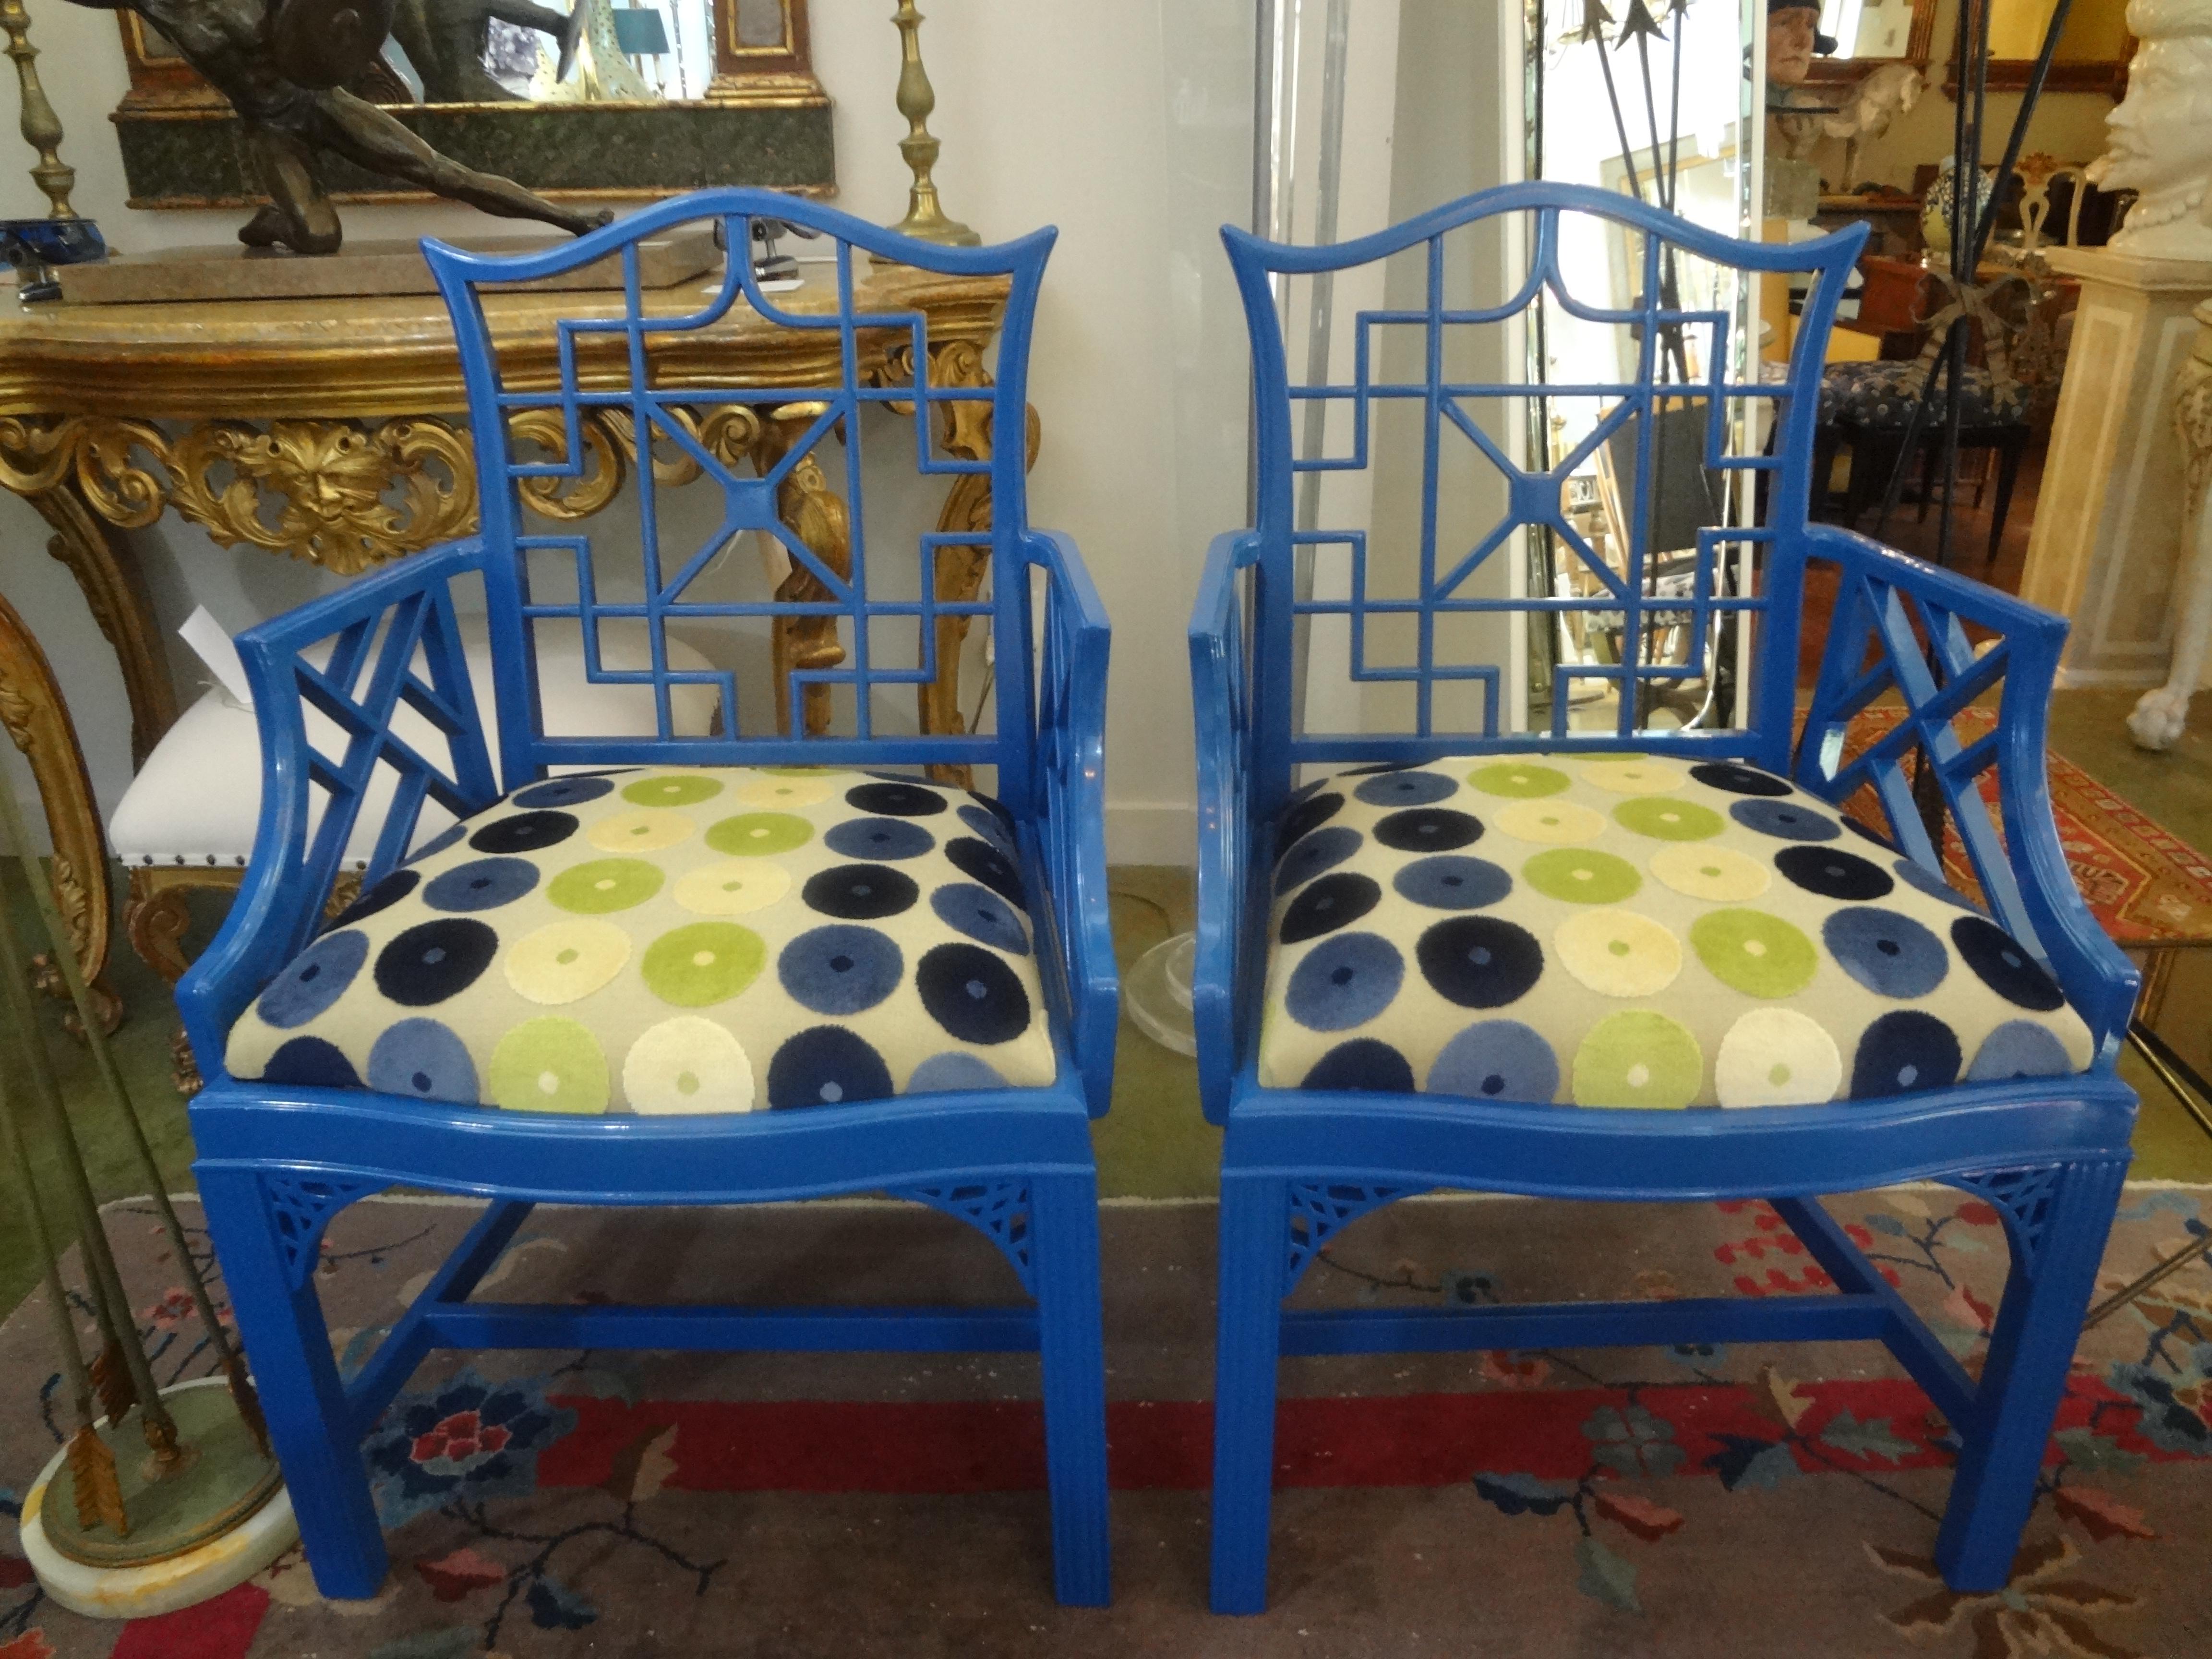 Ein Paar chinesische Stühle im Chippendale-Stil.
Ein Paar chinesische Stühle im Chippendale-Stil in einer wunderschönen blauen Hochglanzausführung. Dieses Paar hat schöne Details und wurde neu mit einem schönen geometrisch geschnittenen Samtstoff